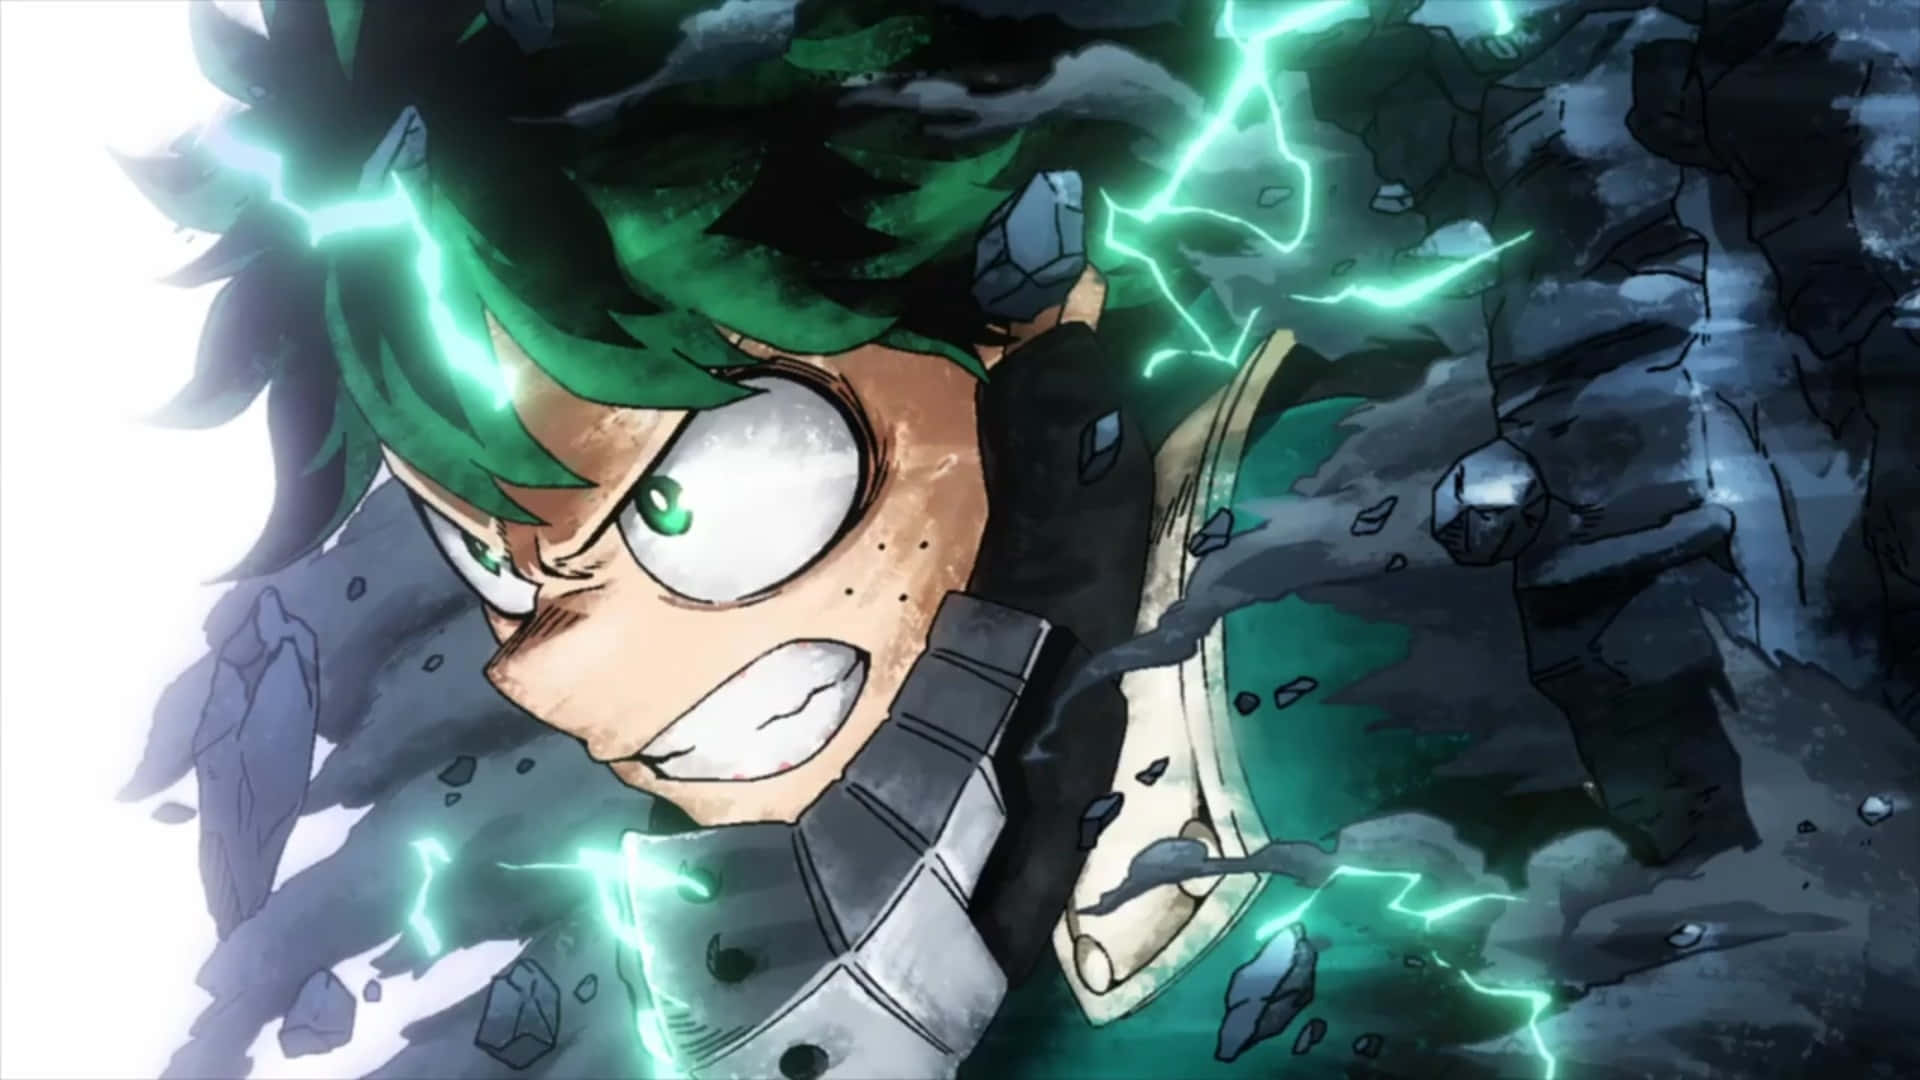 Unpersonaje De Anime Verde Con Rayos Saliendo De Su Cabeza